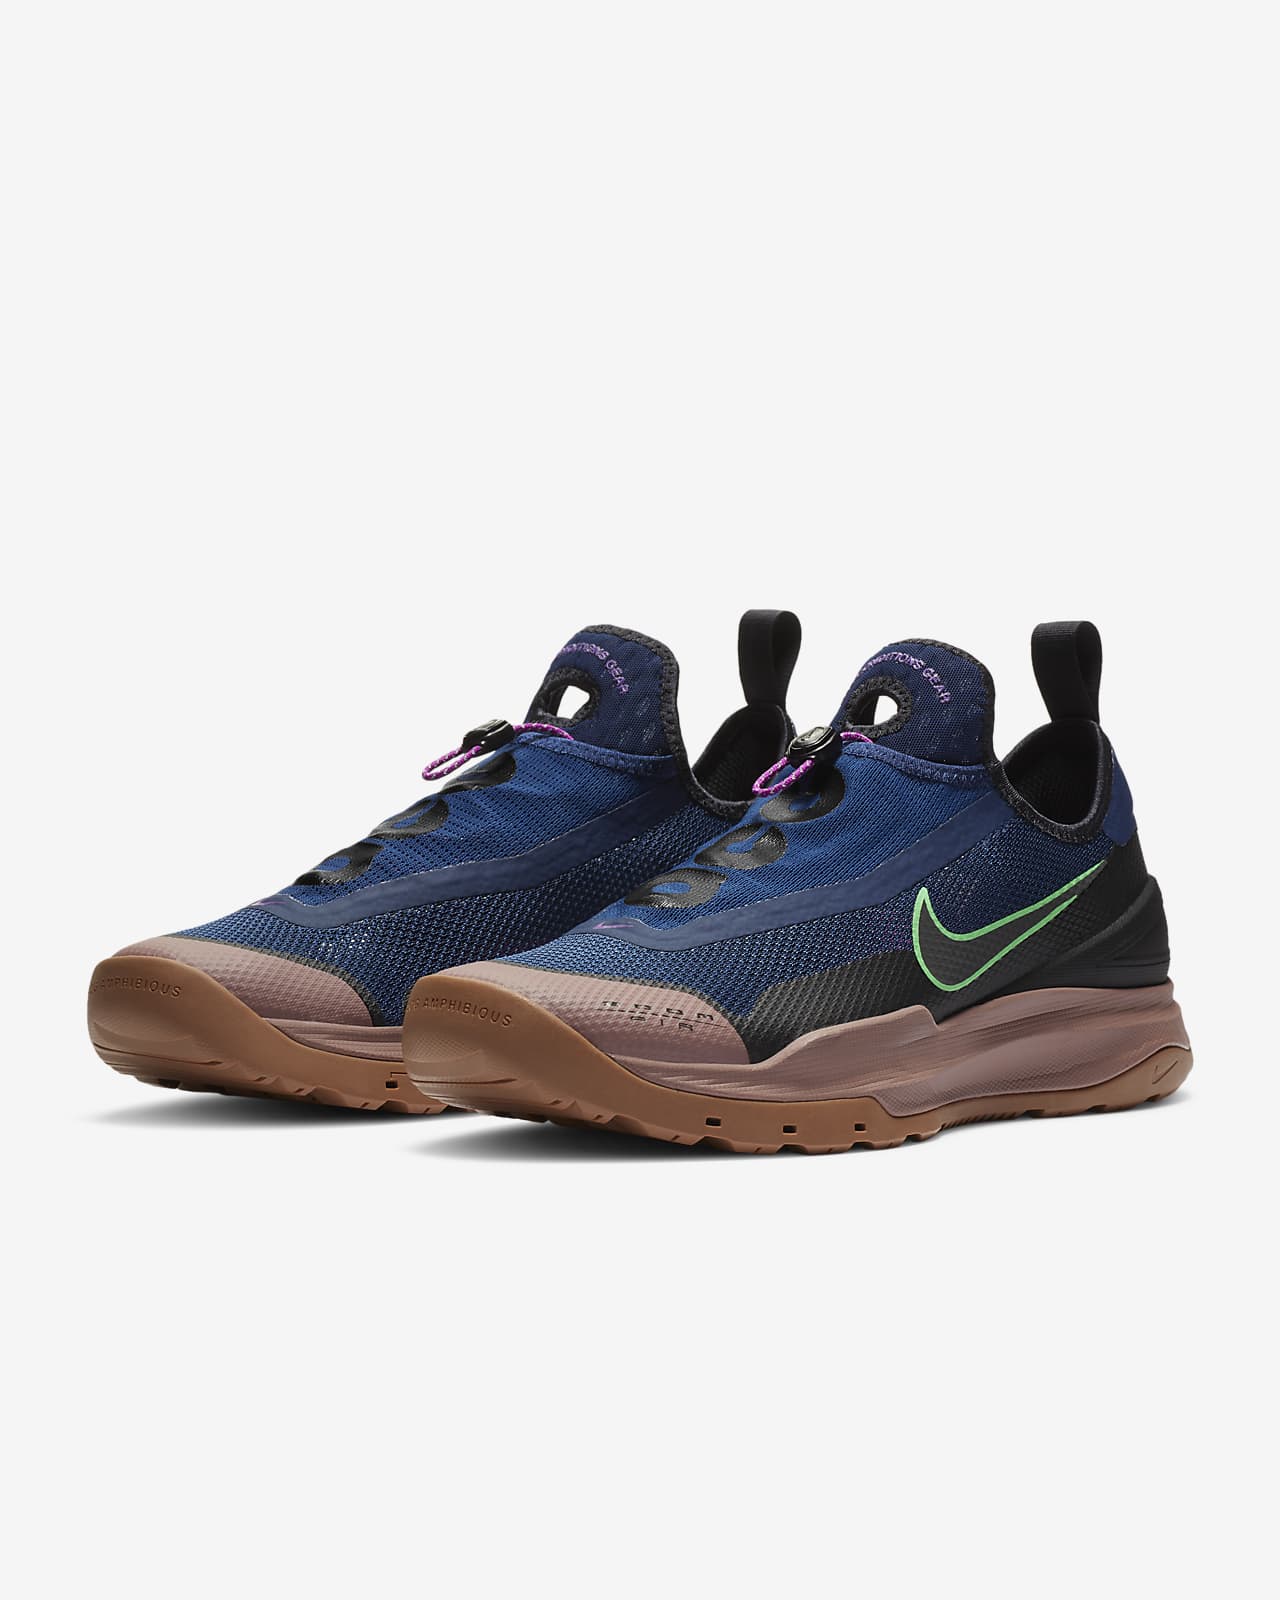 Zoom AO Hiking Shoe. Nike ID